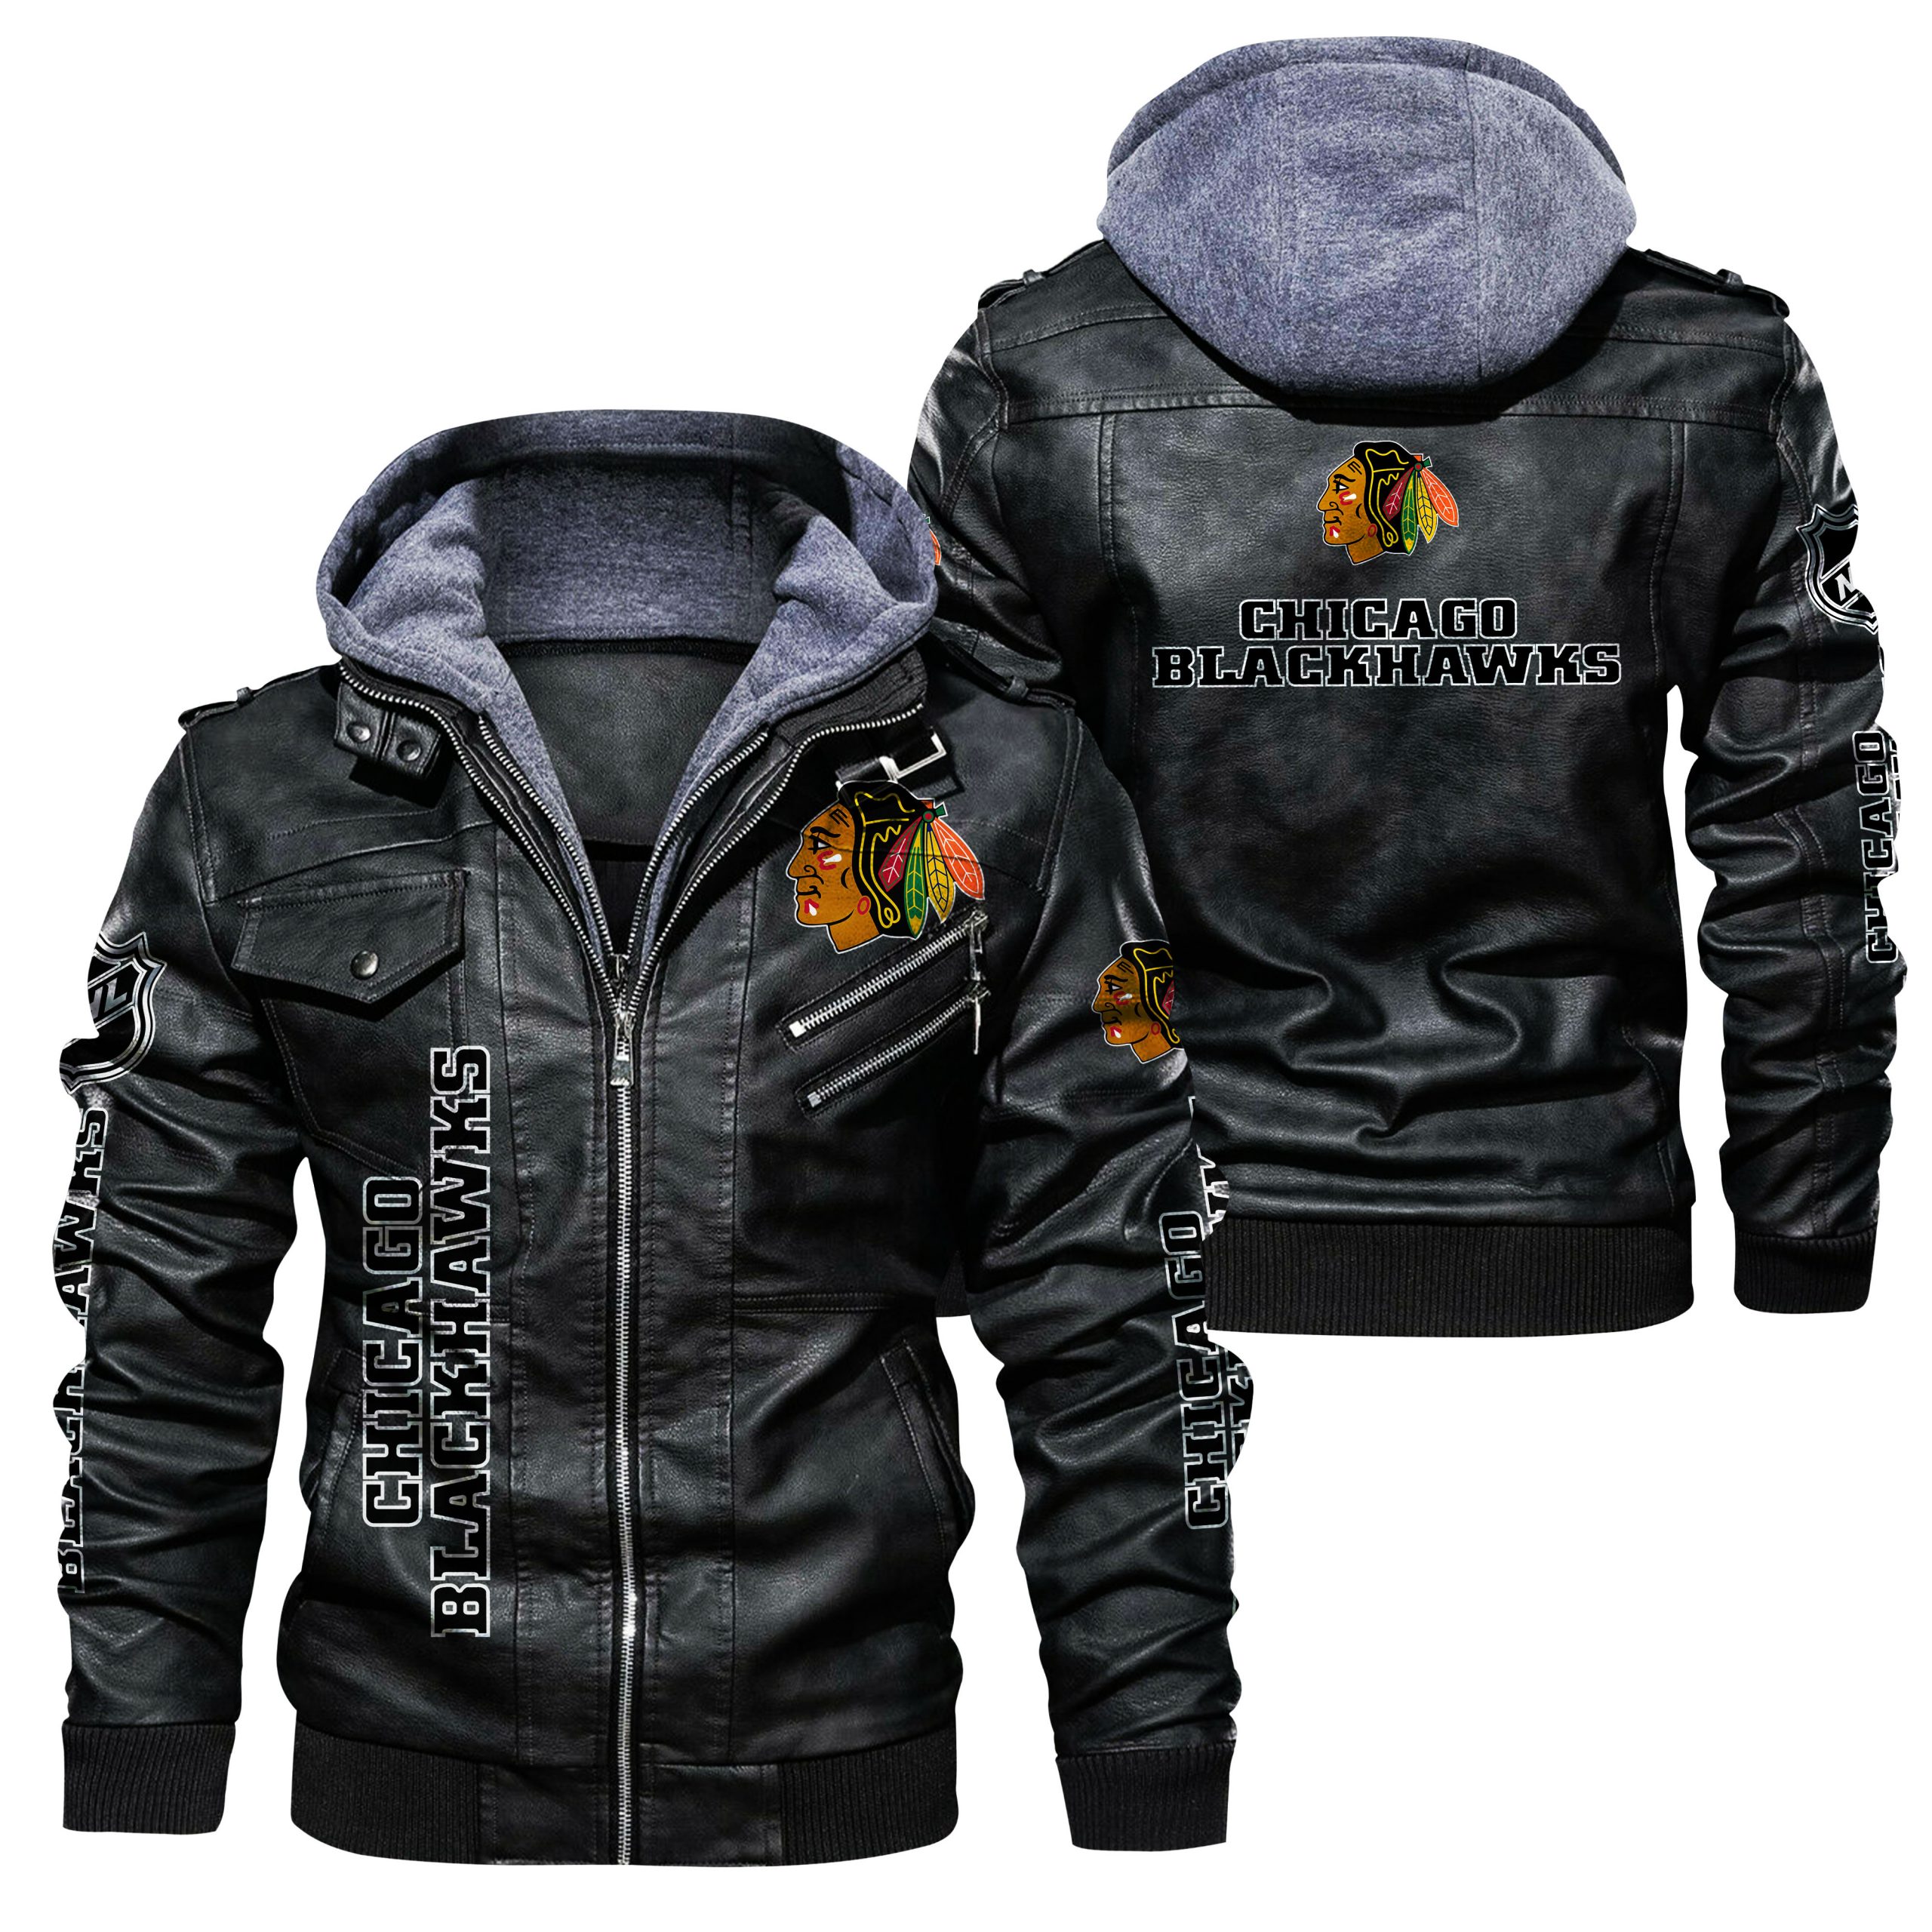 Chicago Blackhawks Leather Jacket gift for fans -Jack sport shop